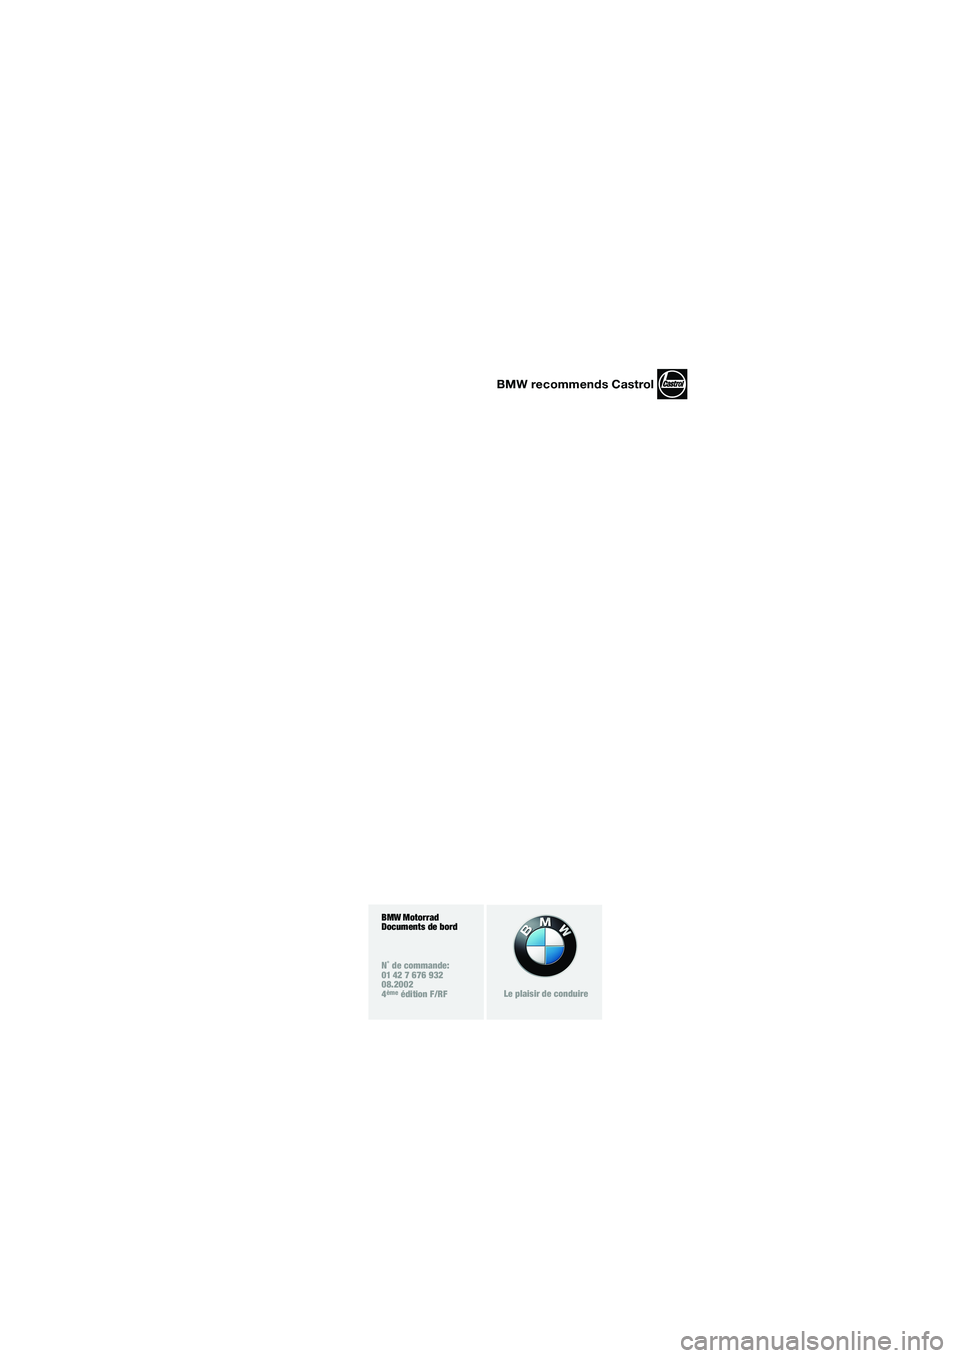 BMW MOTORRAD K 1200 LT 2002  Livret de bord (in French) BMW recommends Castrol
BMW Motorrad
Documents de bord
N˚ de commande:
01 42 7 676 932
08.2002
4
ème édition F/RFLe plaisir de conduire
10LTbkf4.bk  Seite 101  Montag, 26. August 2002  1:44 13 